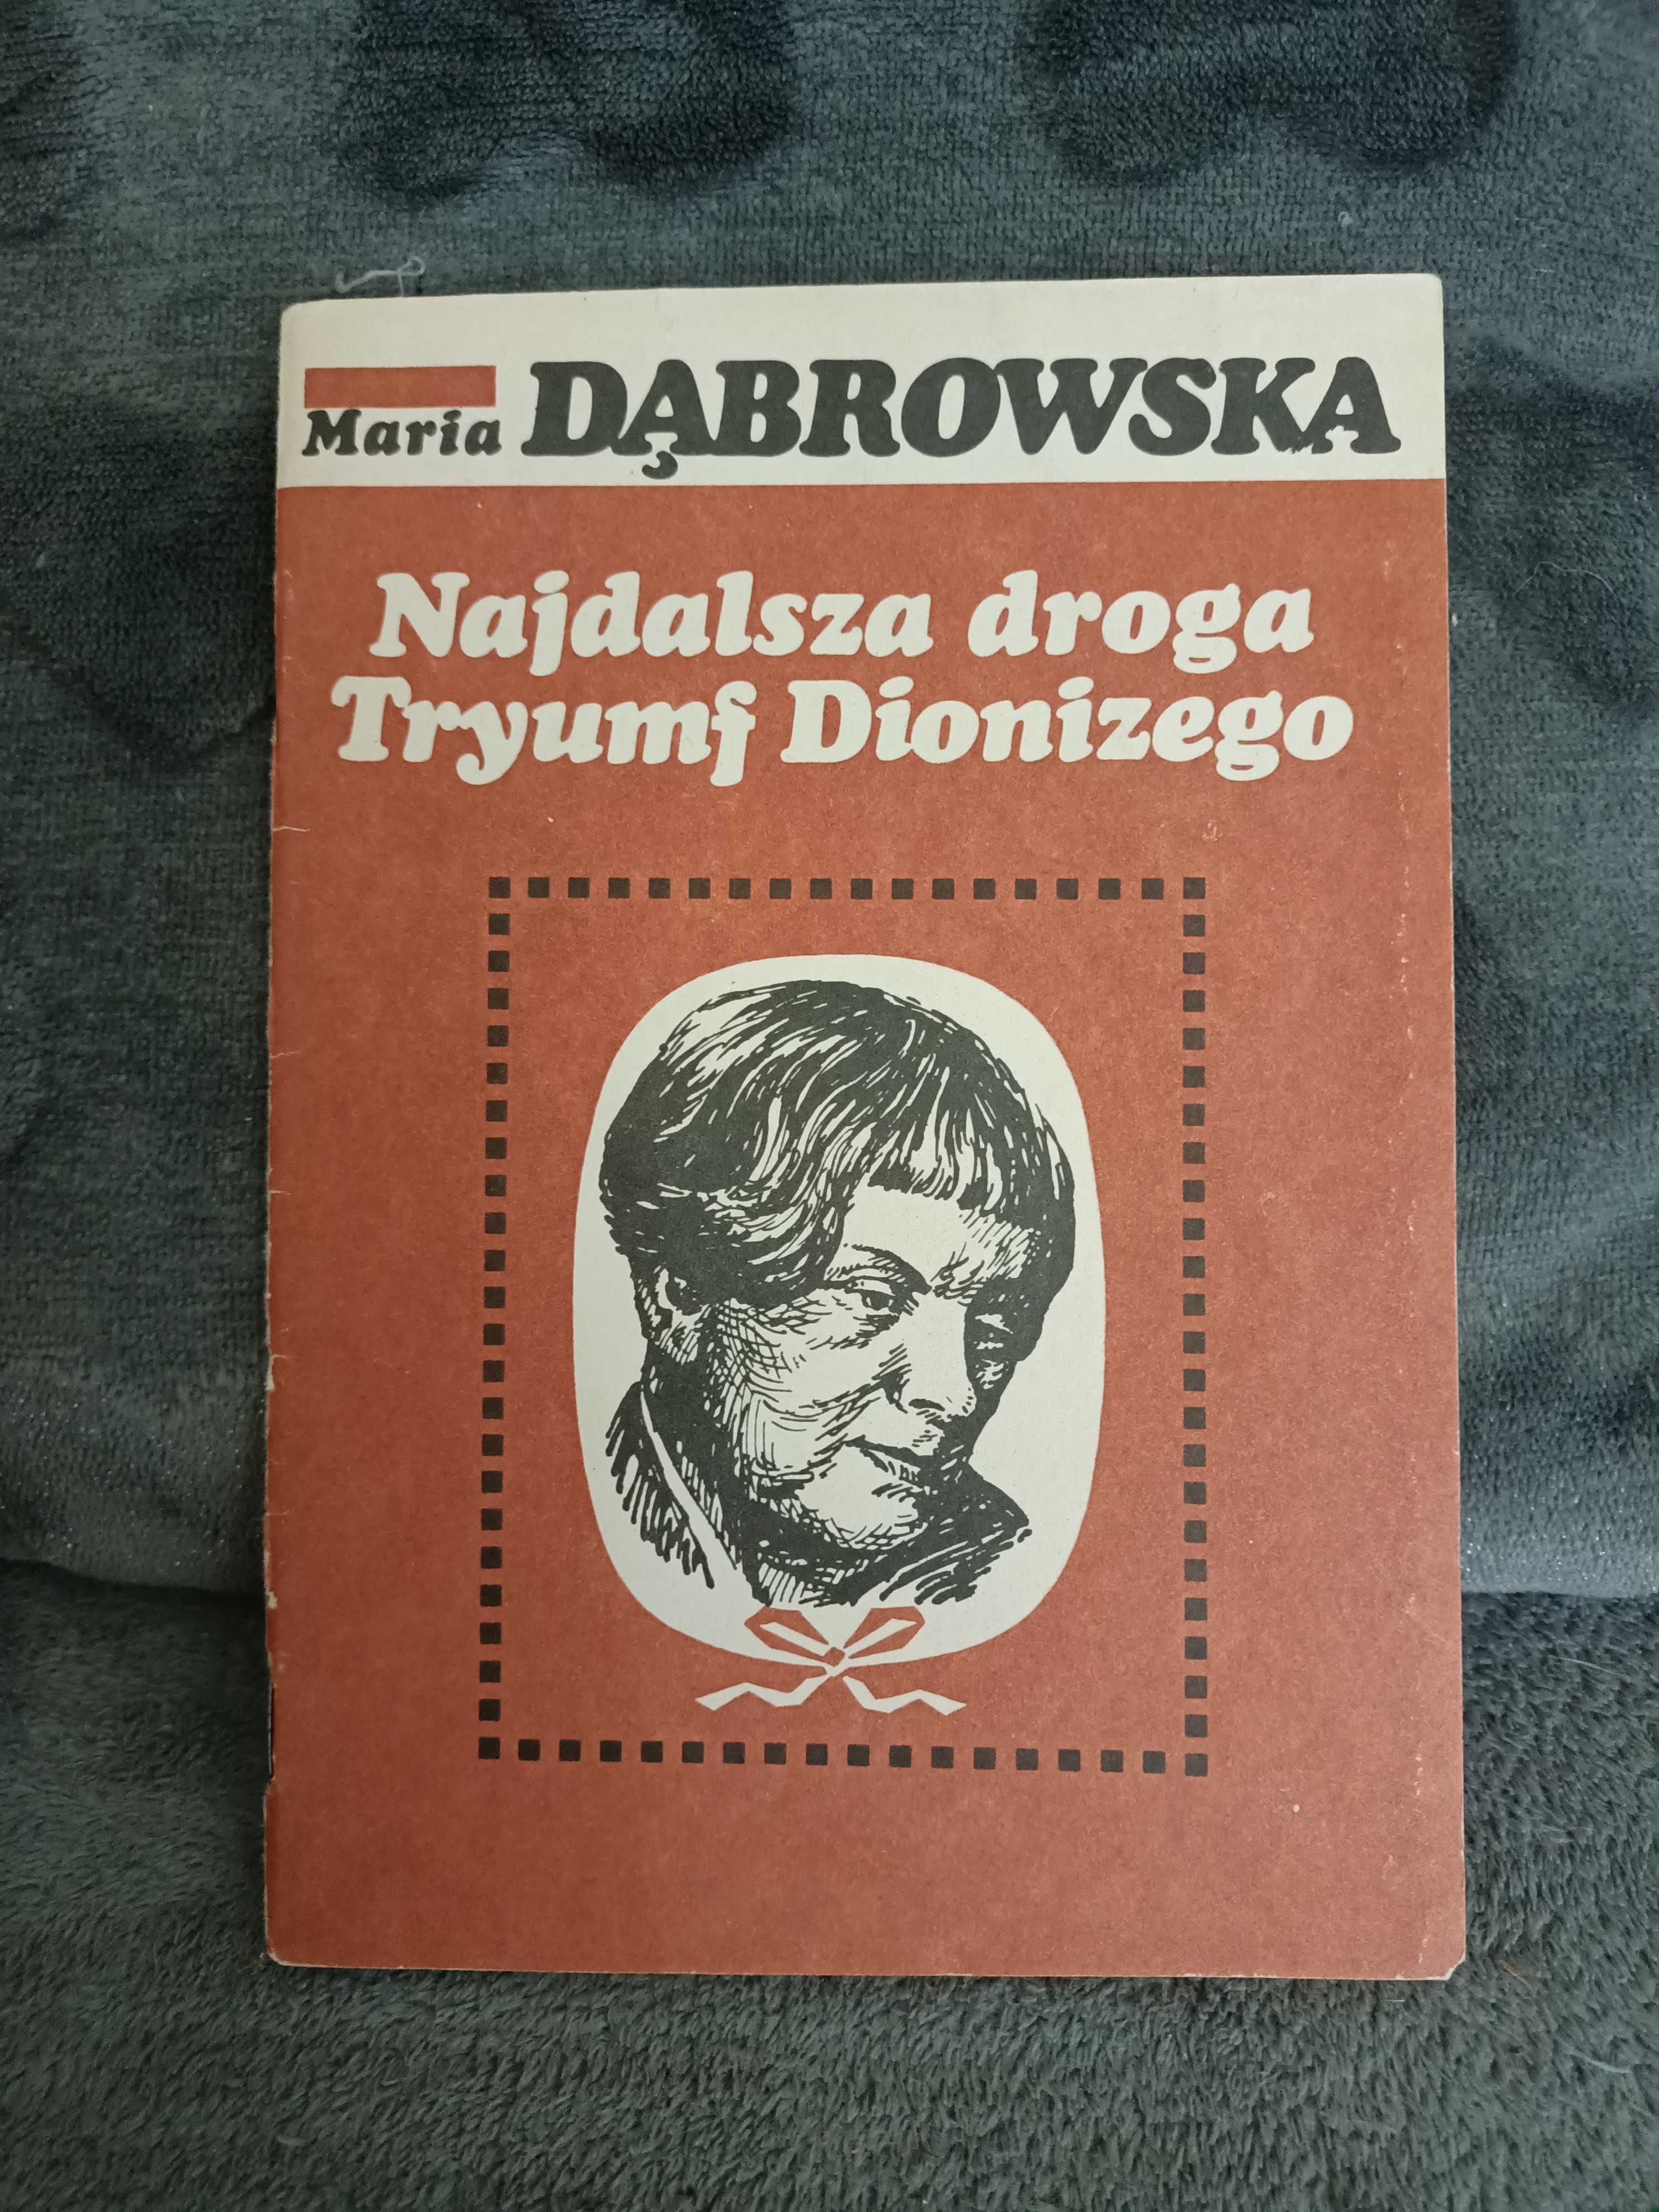 Dąbrowska M. - Najdalsza droga. Tryumf Dionizego.